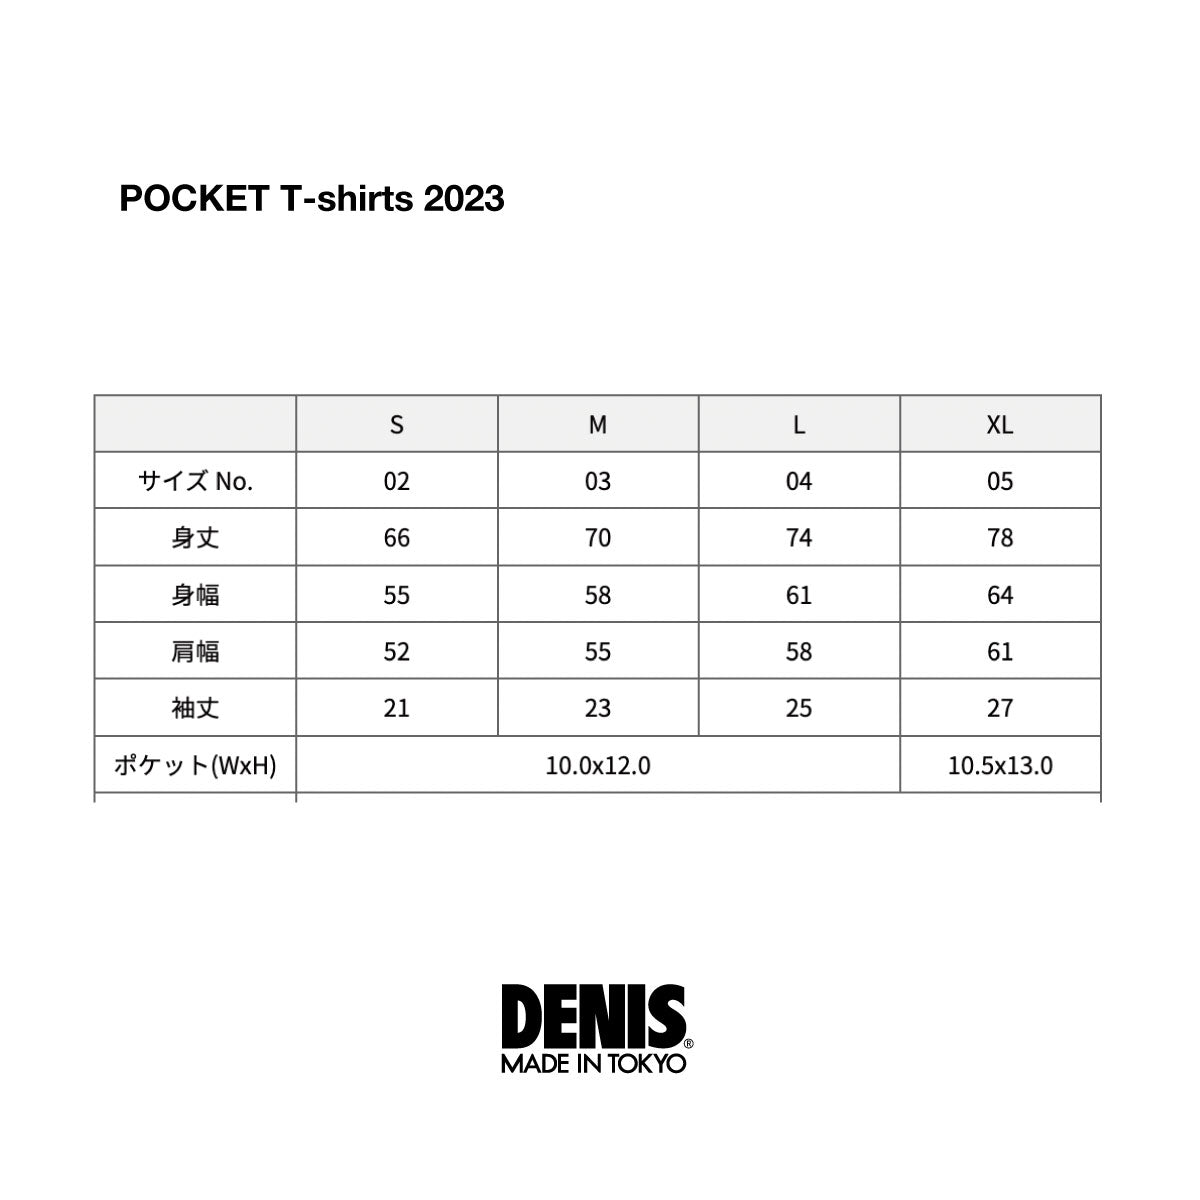 ポケットTシャツ DENIS POCKETT 2023